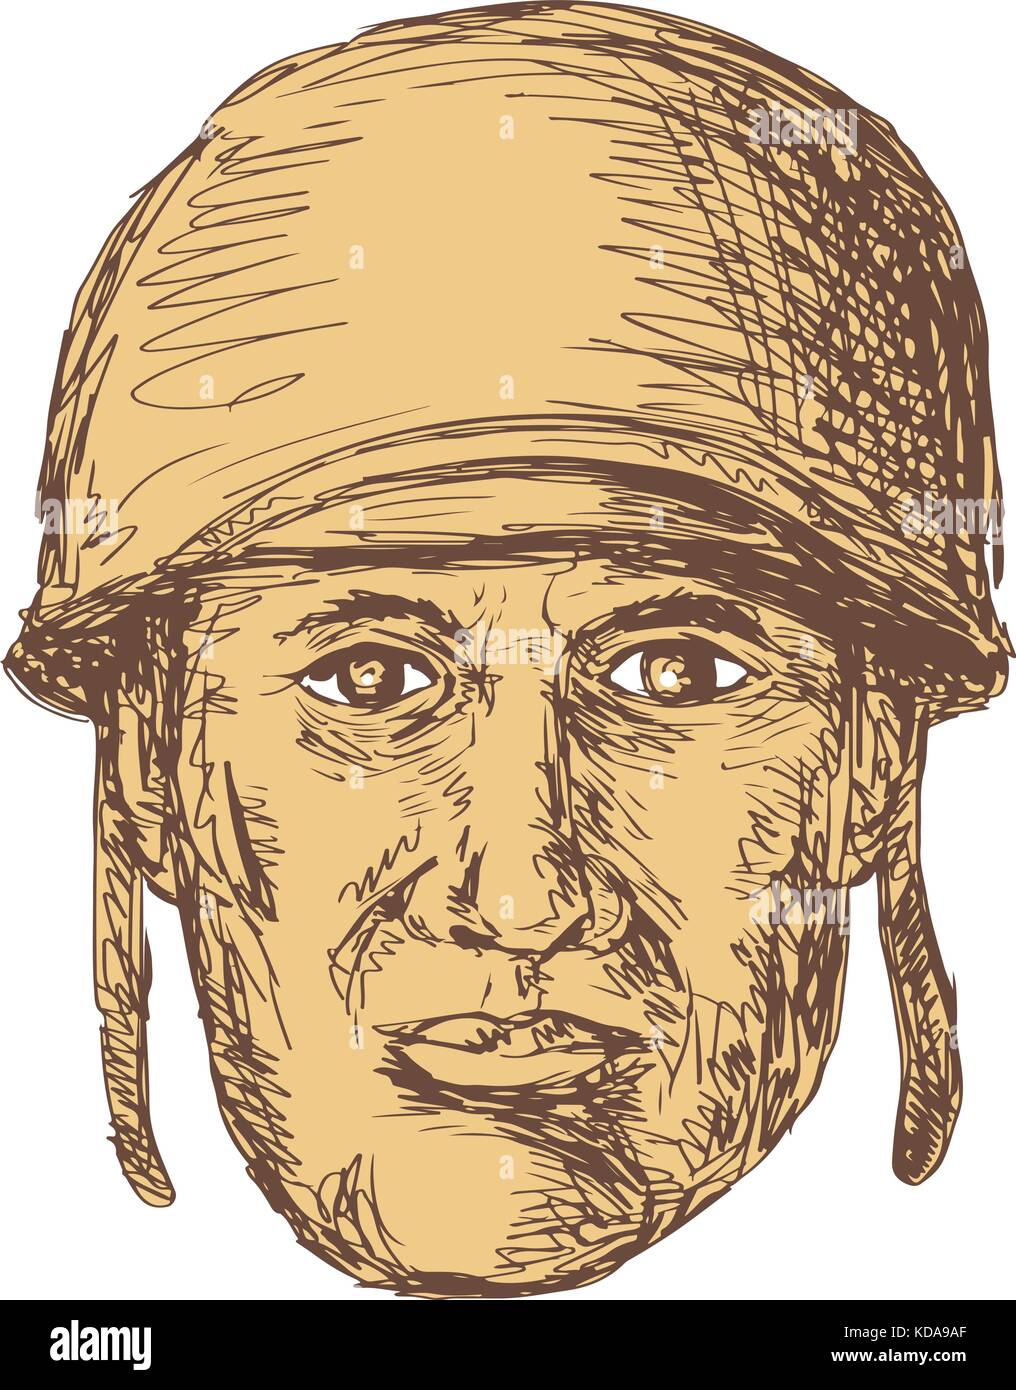 Style croquis dessin illustration d'un ww2 ou la seconde guerre mondiale, soldat américain en tête portant un casque vu de l'avant sur des arrière-plan. Illustration de Vecteur